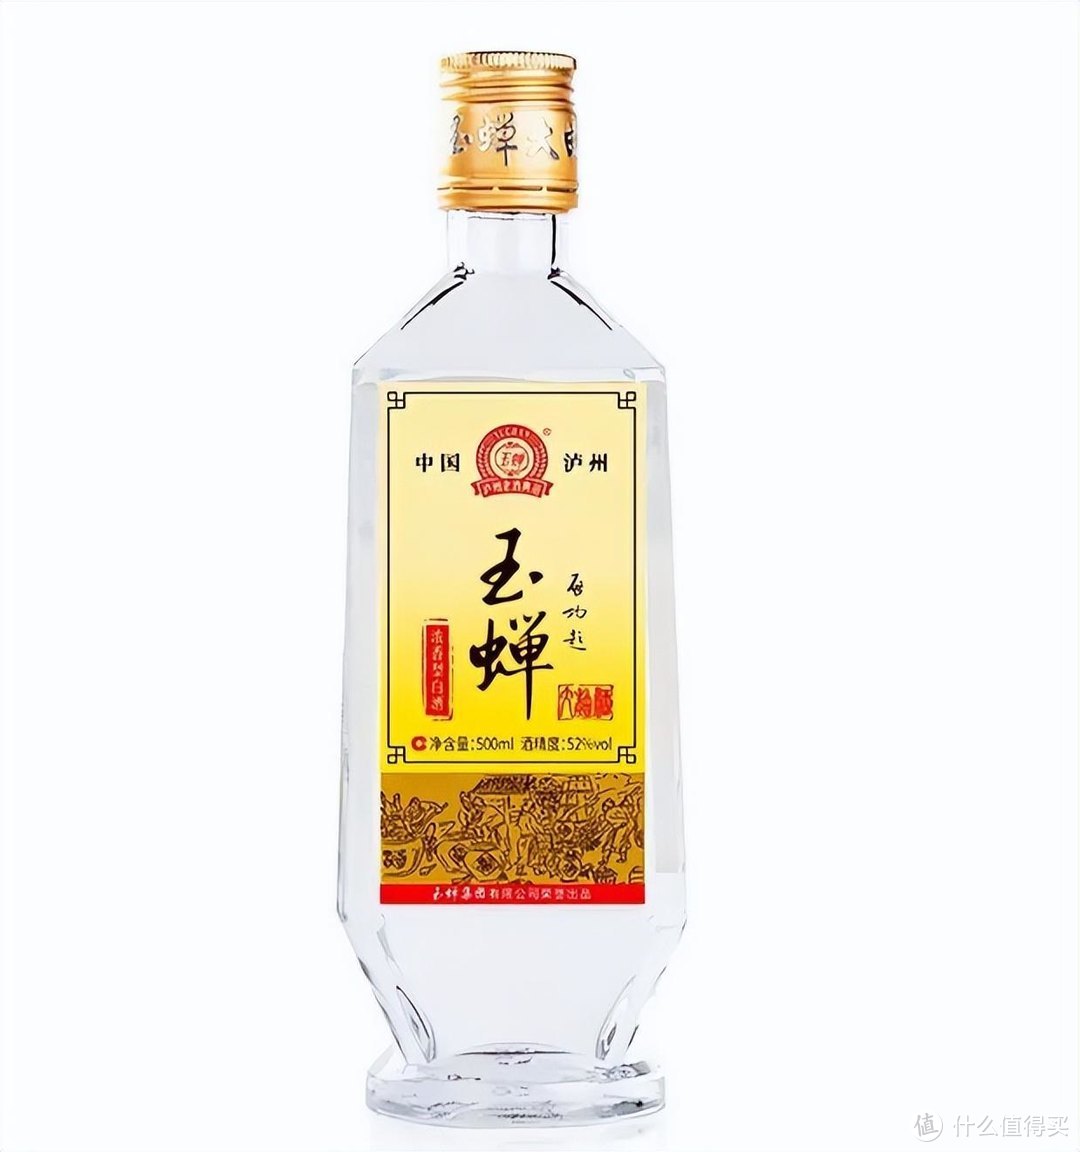 高粱酒品牌榜丨大部分来自台湾，最贵的价格超过茅台